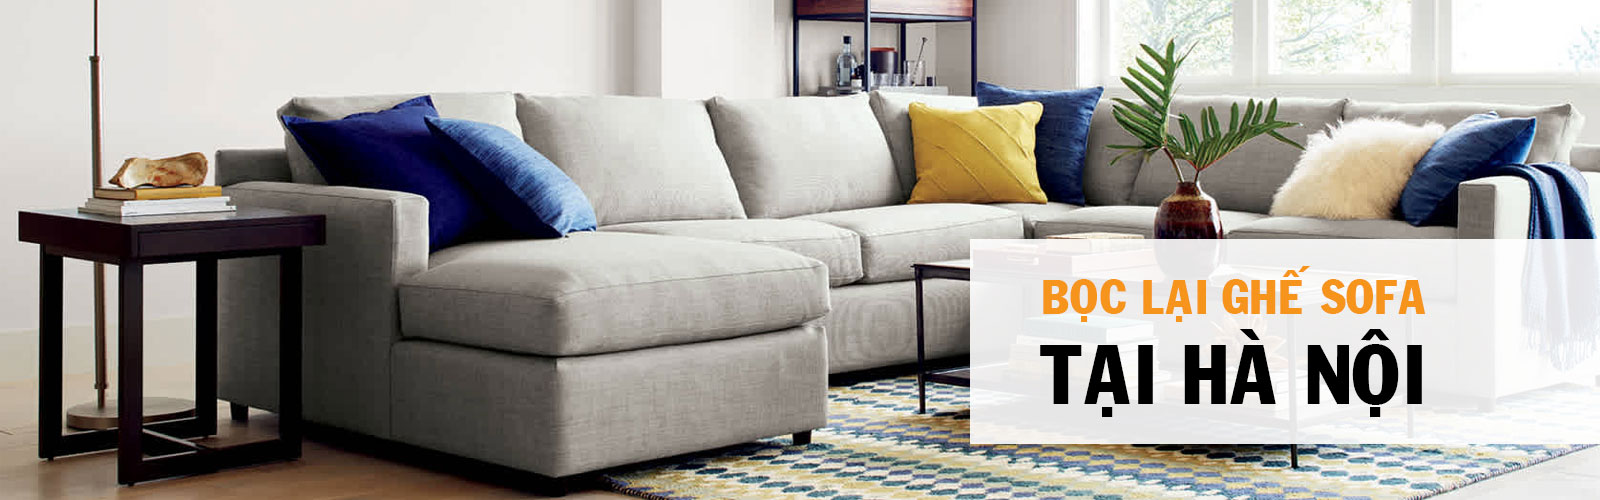 5 ý tưởng sửa chữa bọc ghế sofa hàng đầu